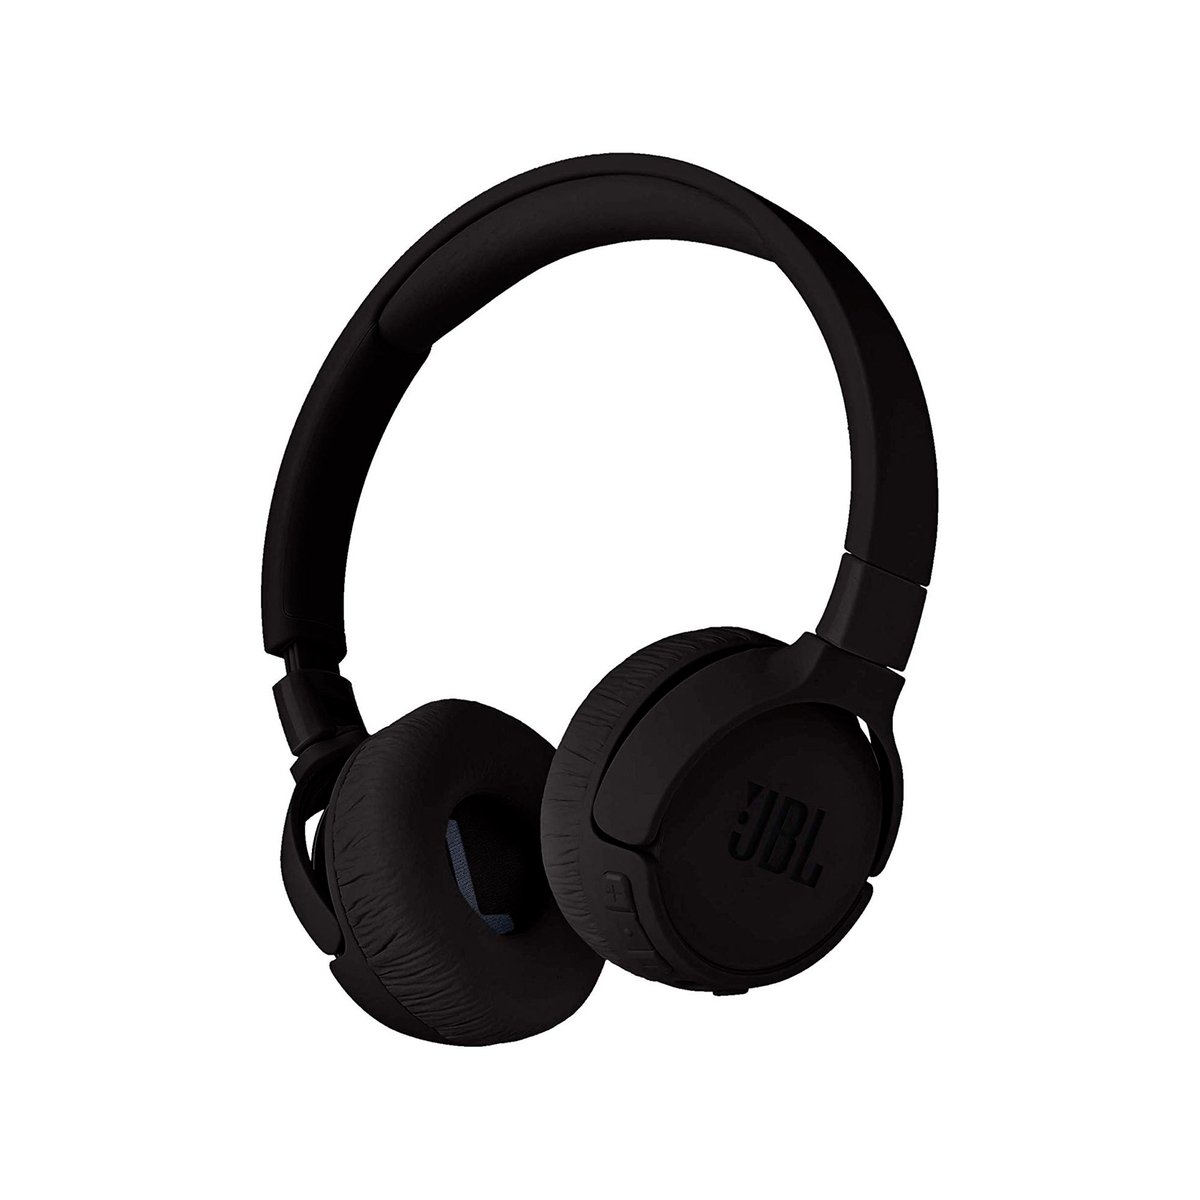 JBL Wireless Headphones Tune 600 BTNC Black